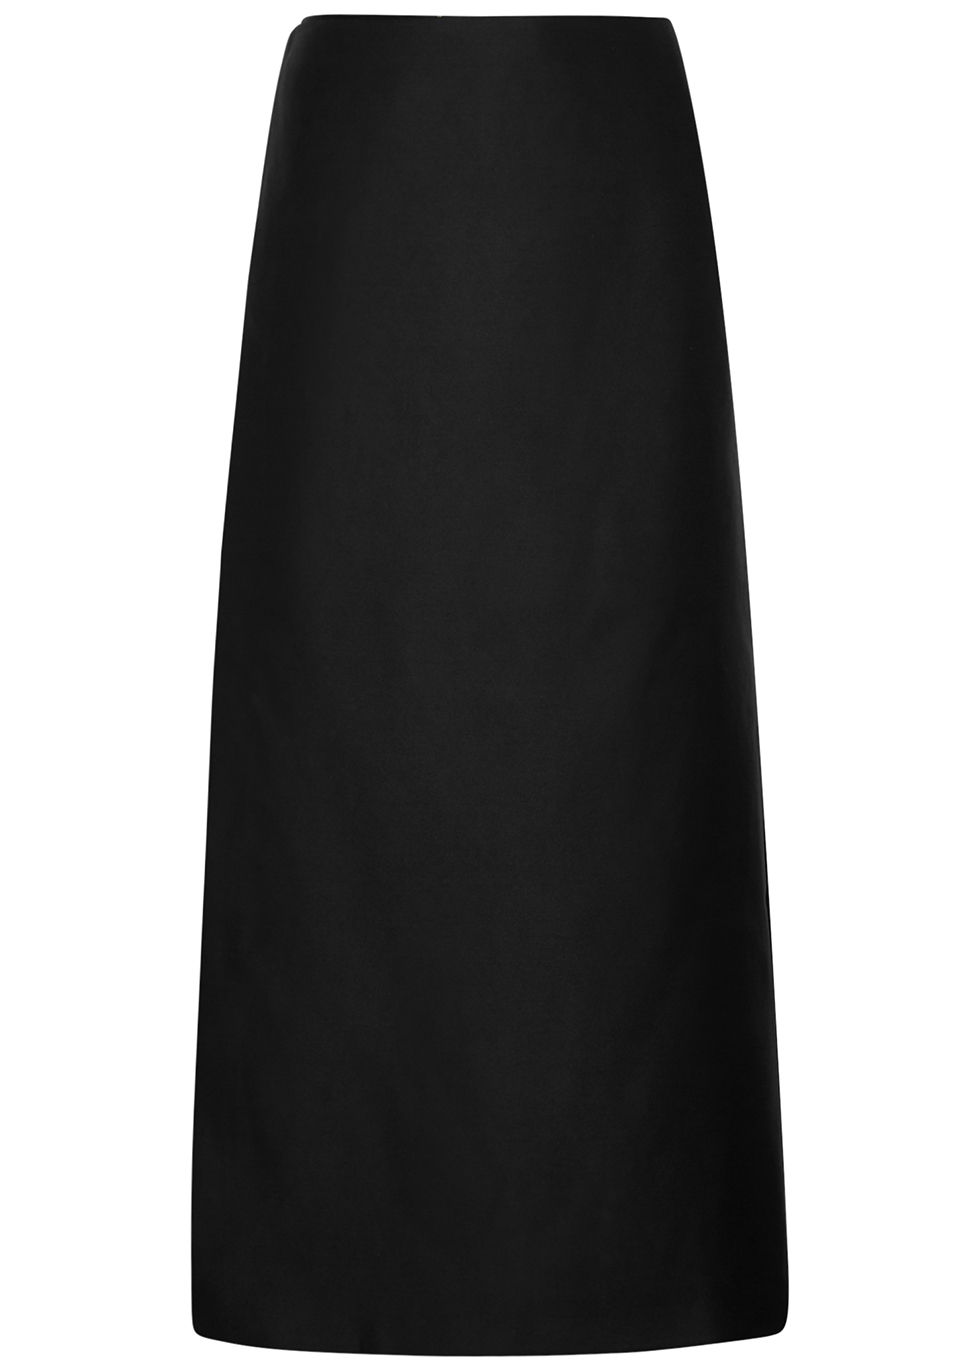 THE ROW Kanita black layered silk-satin skirt - Harvey Nichols